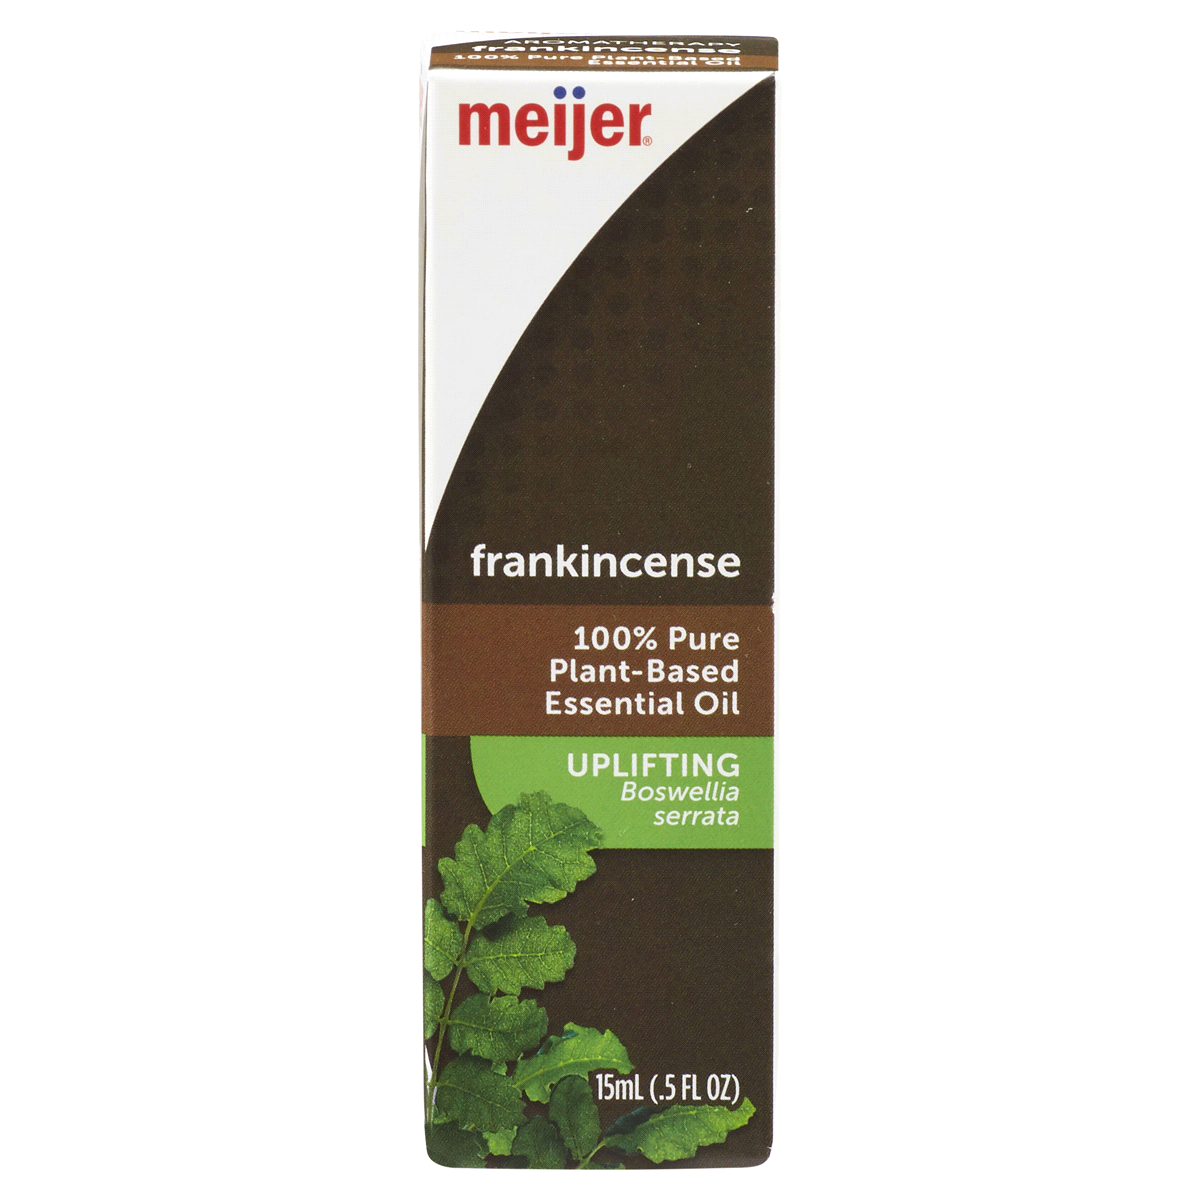 slide 1 of 4, Meijer Frankincense Oil, 15 ml